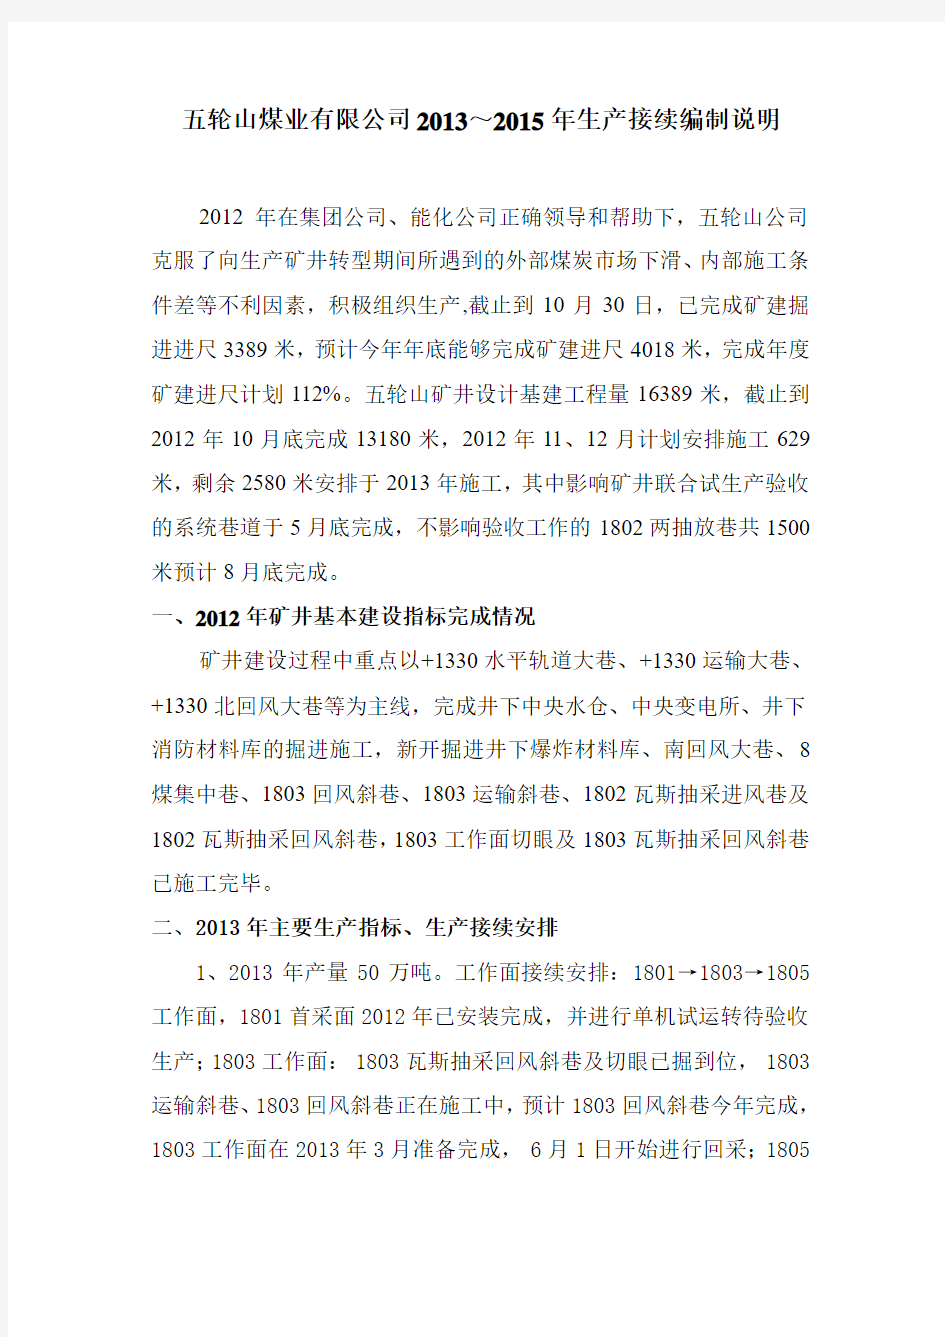 五轮山公司2013年至2015年生产接续编制说明